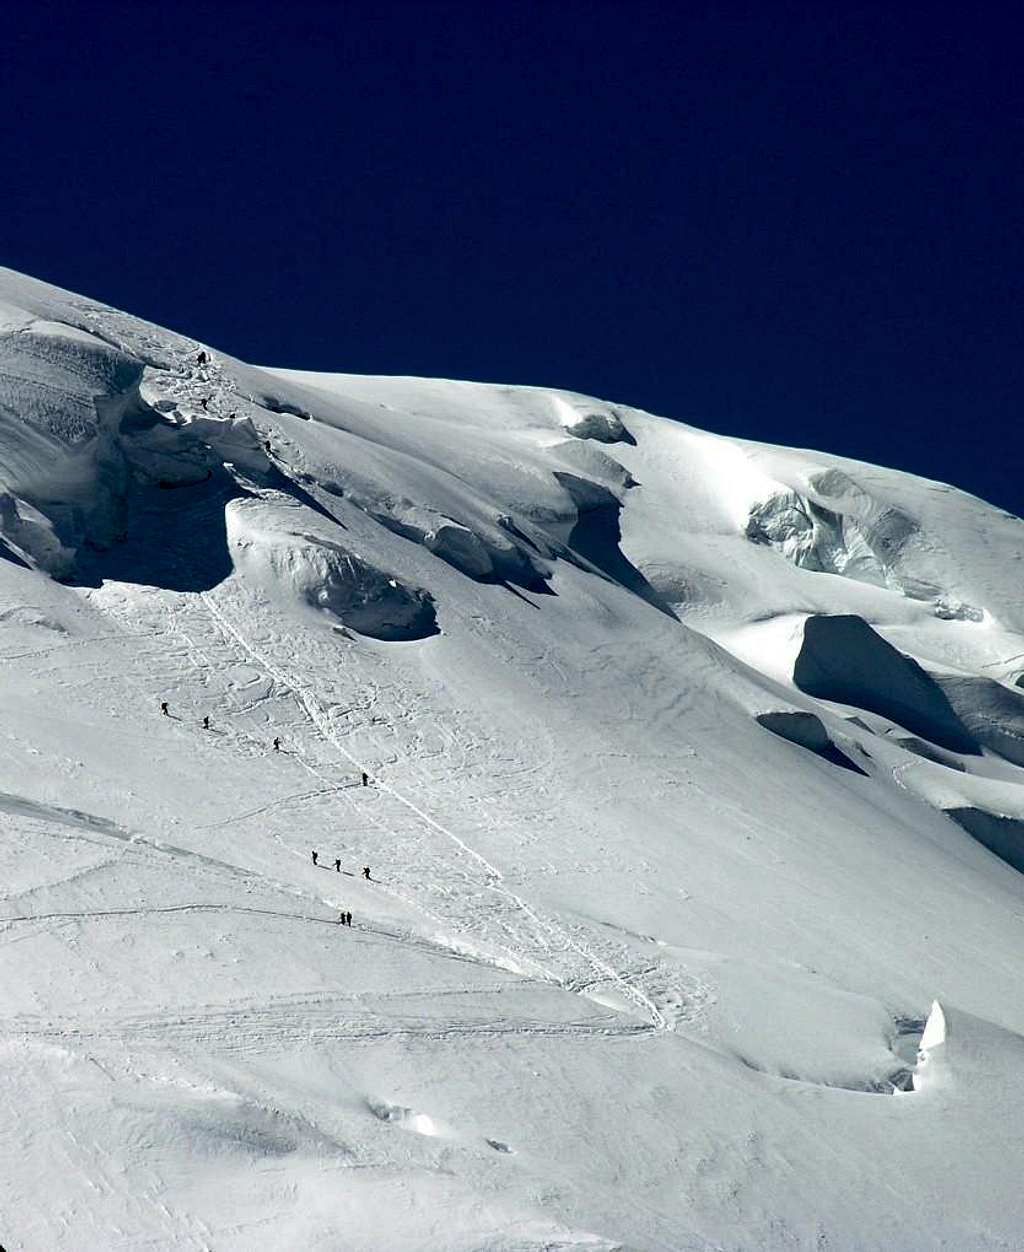 Mont Blanc du Tacul 